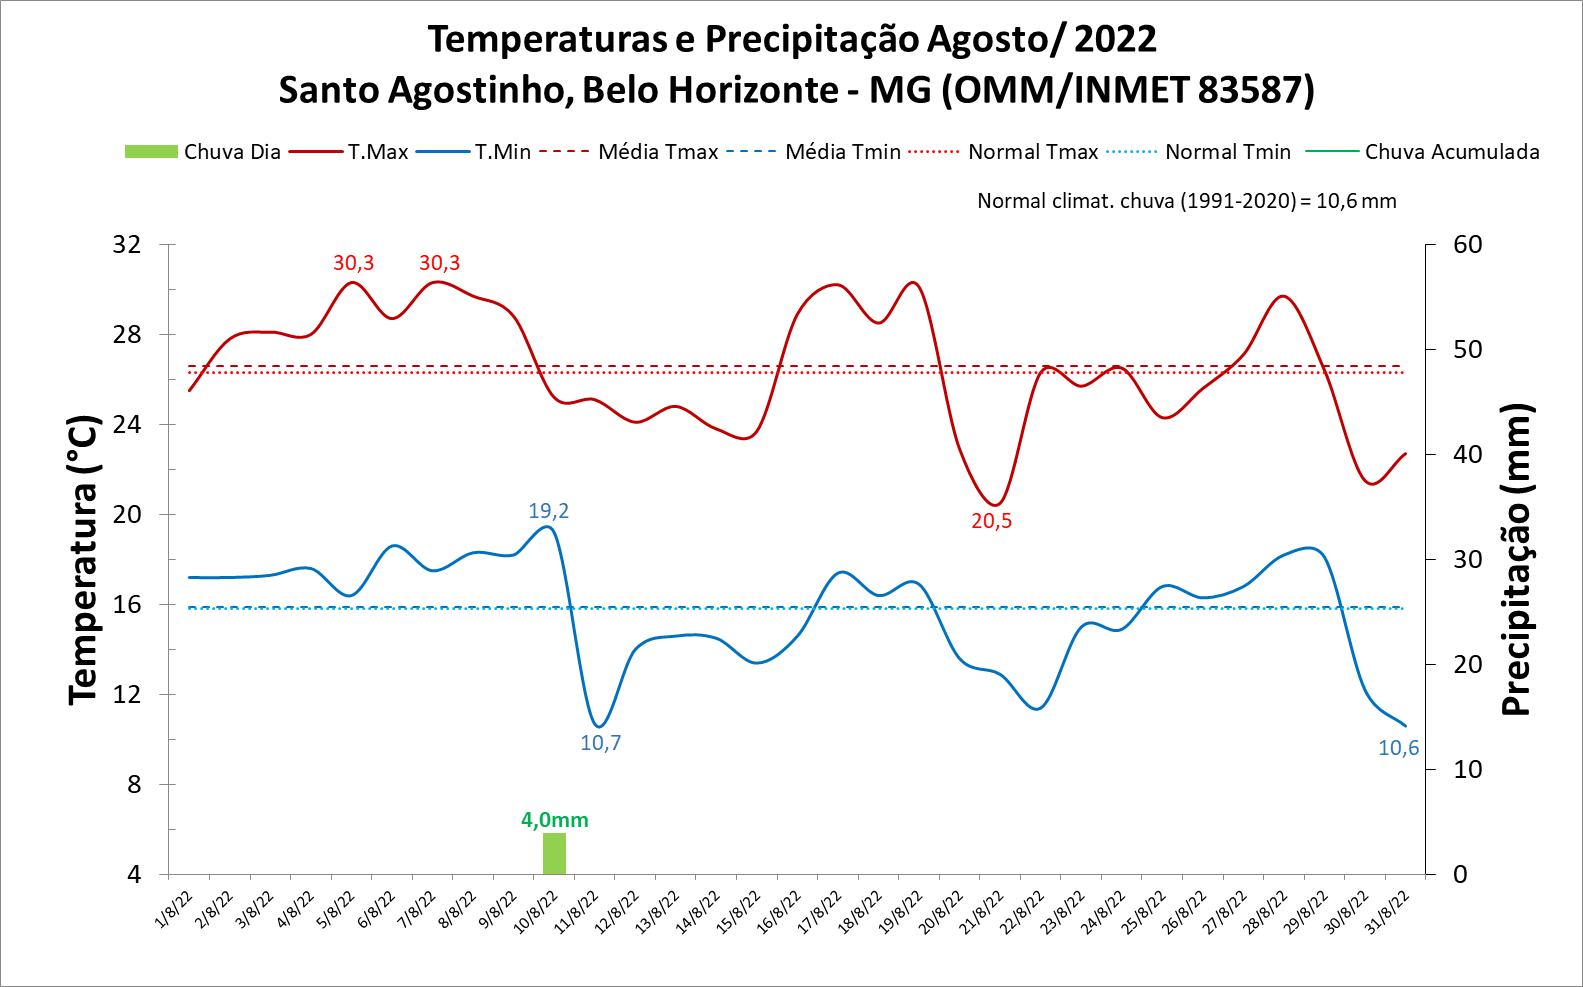 Balanço: Belo Horizonte (MG) registrou índices de umidade menores que 30% ao longo do mês de agosto